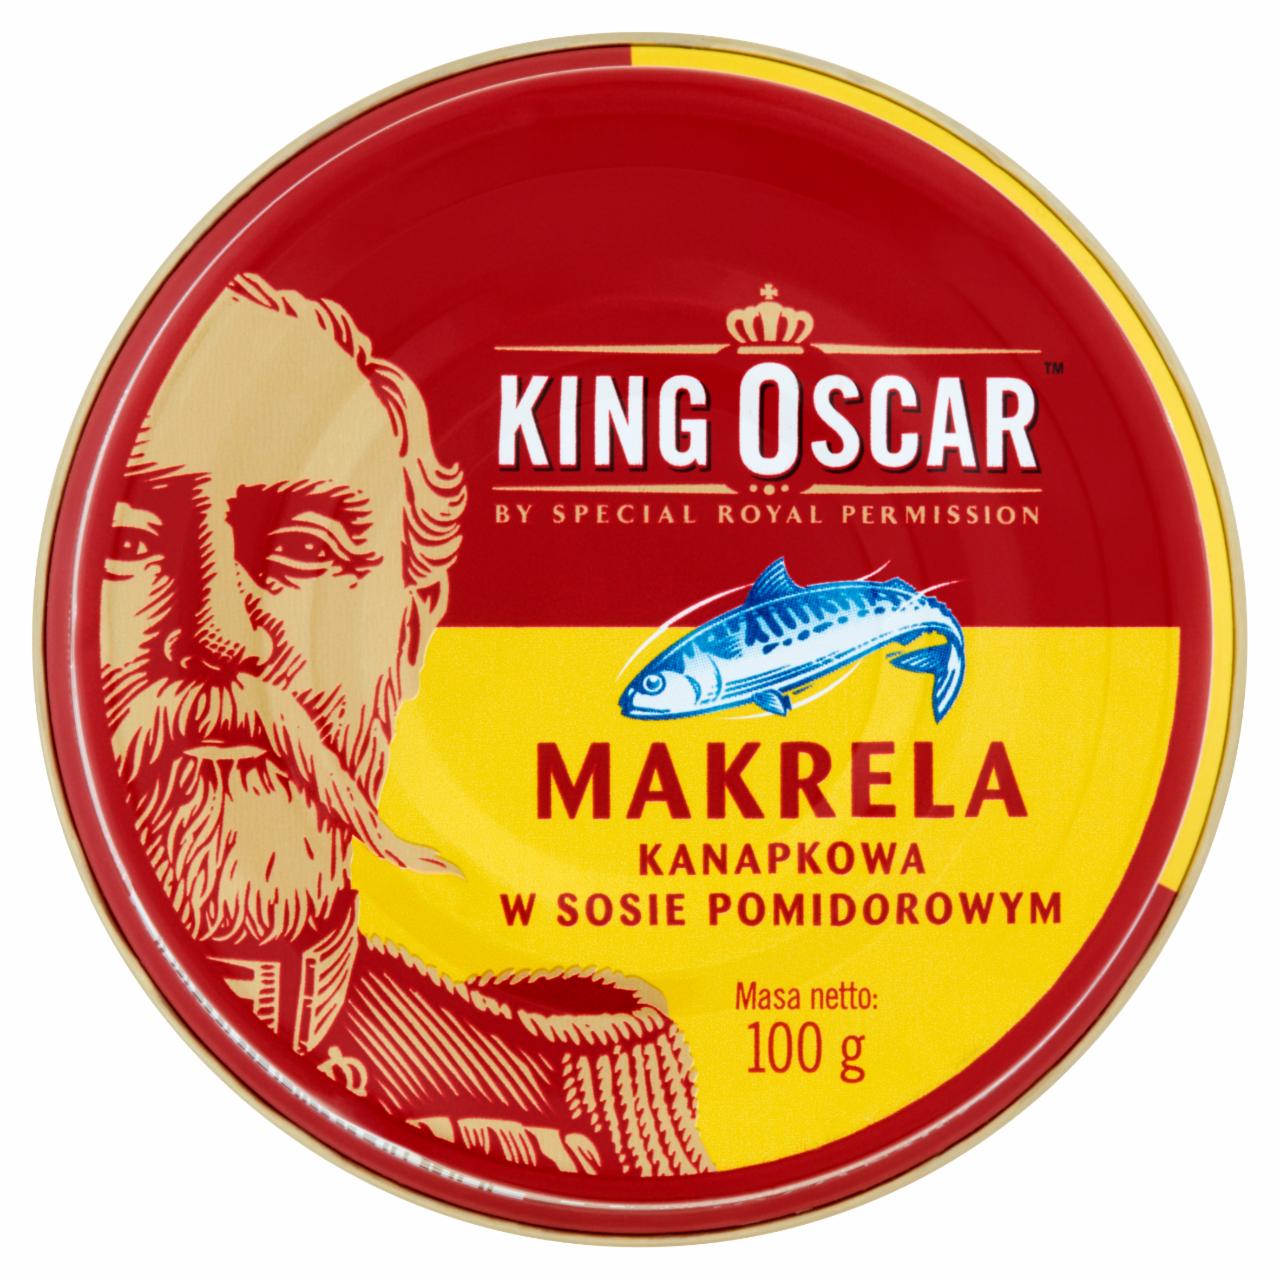 Zdjęcia - King Oscar Makrela kanapkowa w sosie pomidorowym 100 g